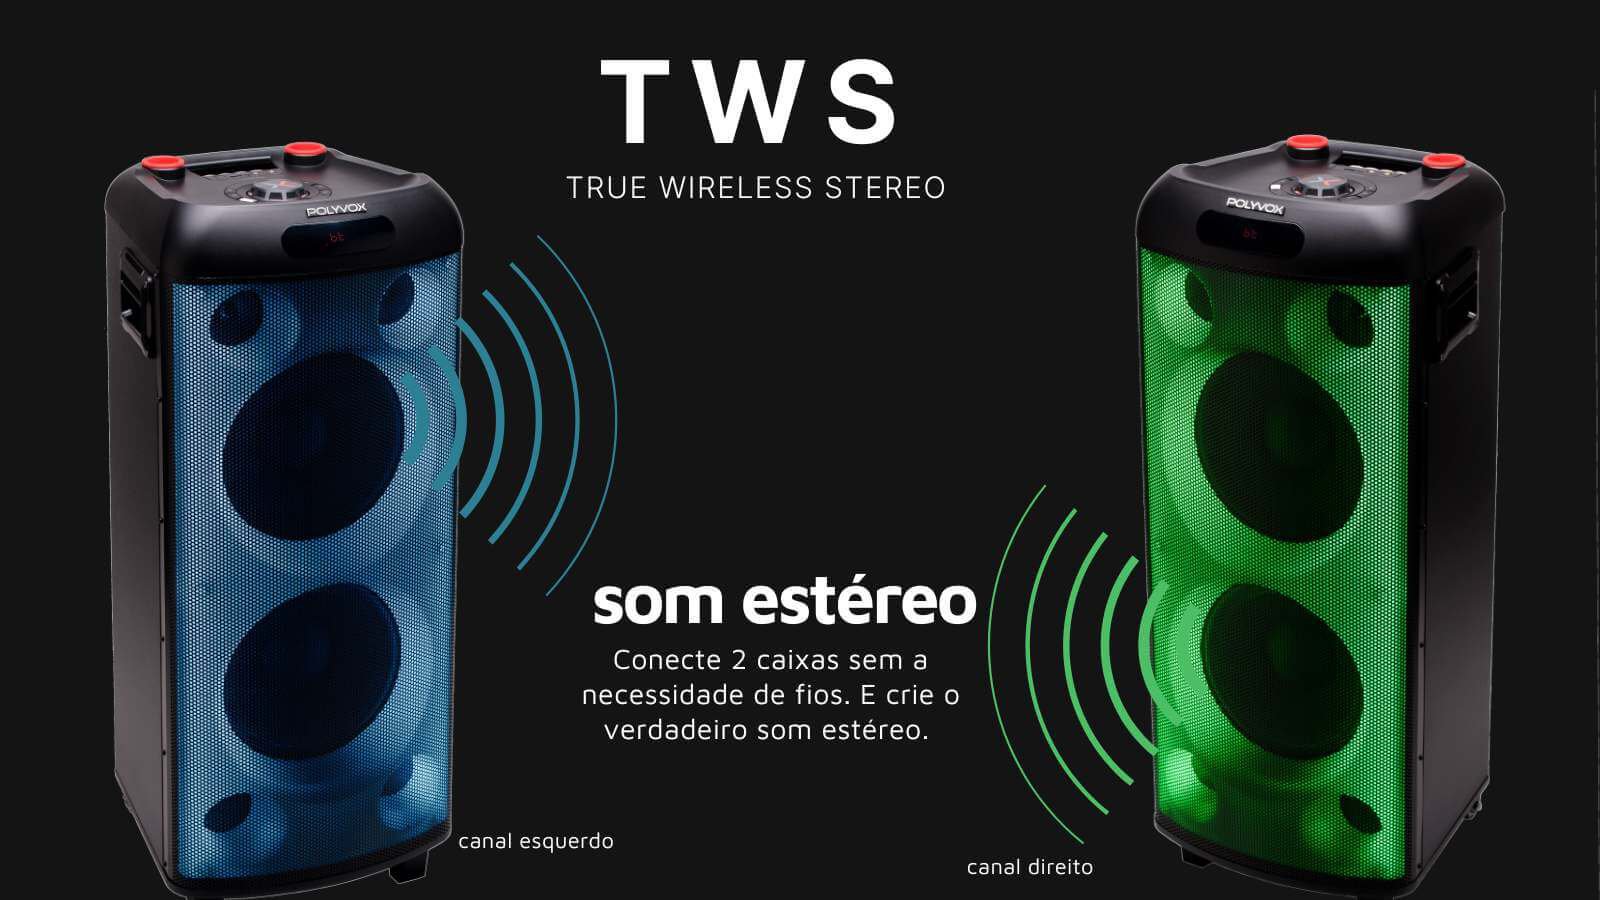 conecte 2 caixas de som amplificada através do TWS e tenha o verdadeiro som estéreo